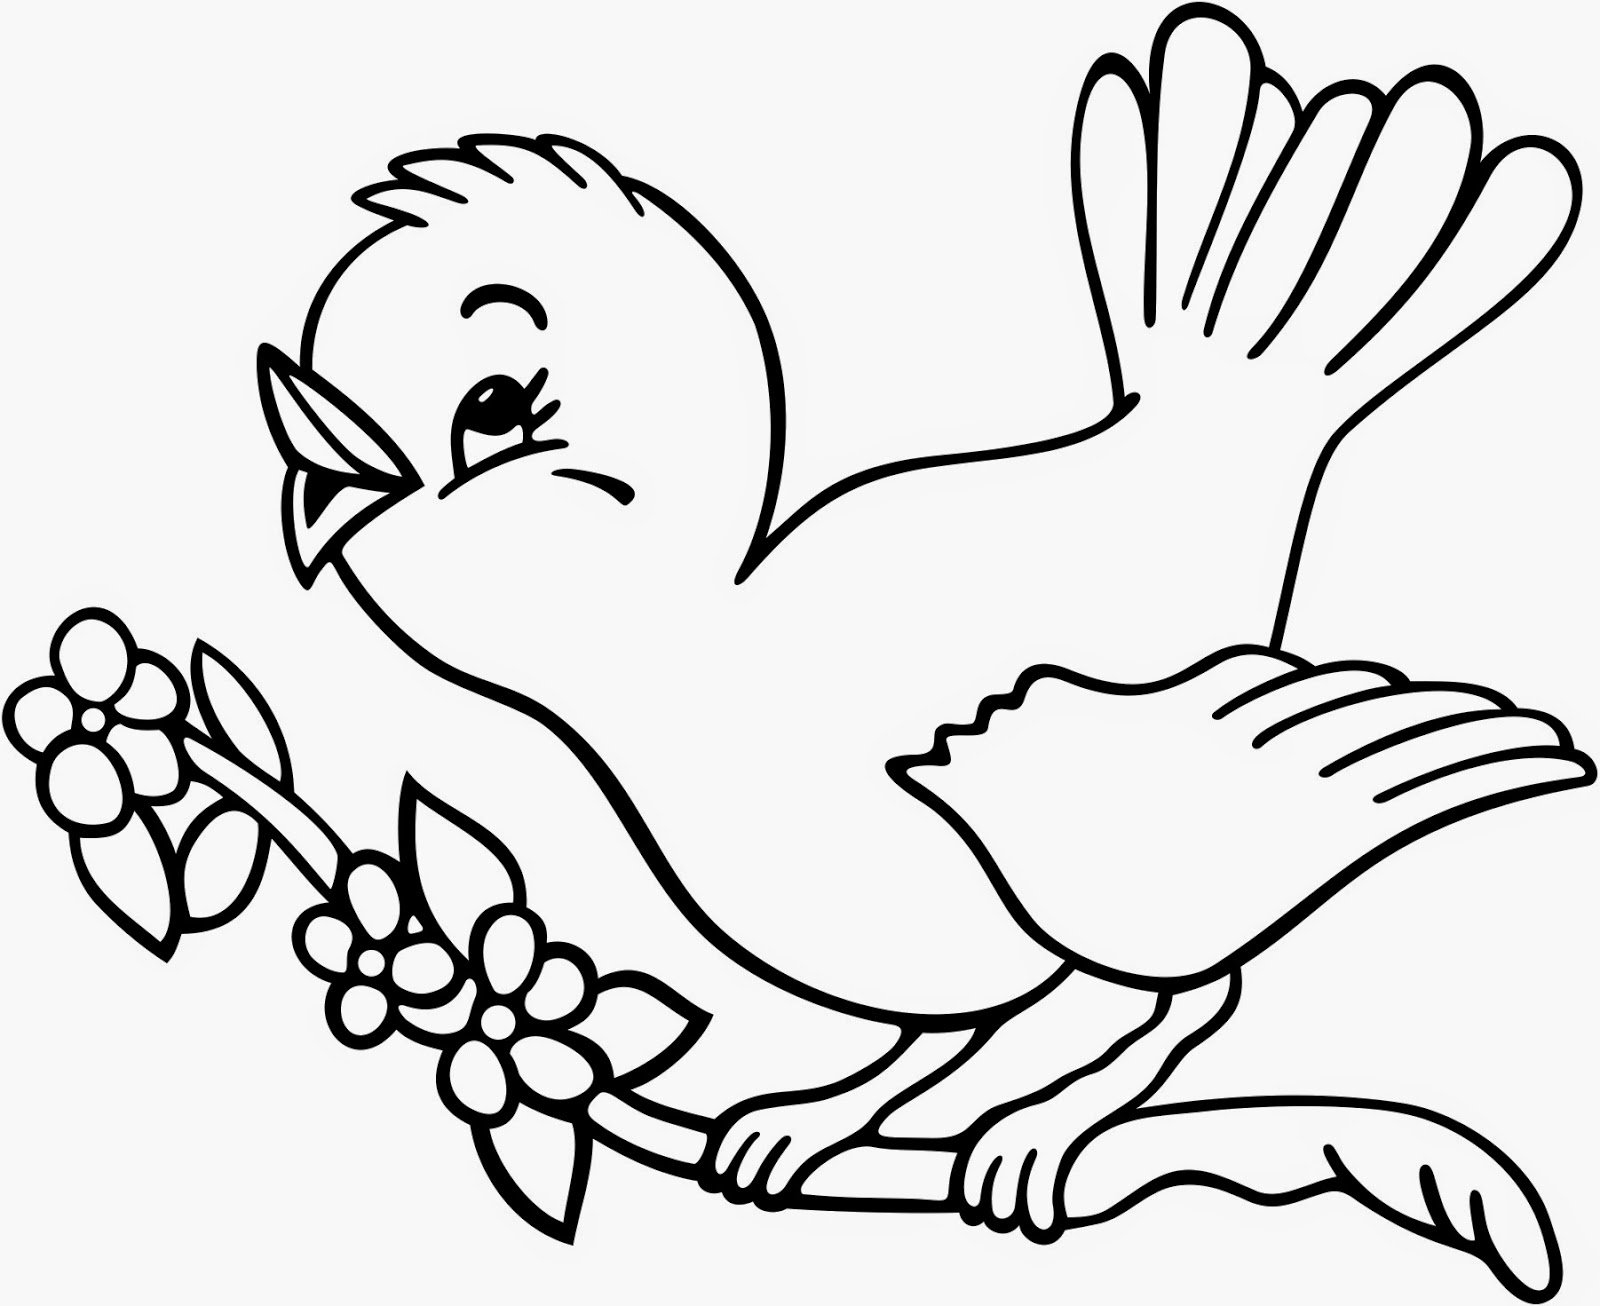 Раскраски Перелётных птиц распечатать или скачать бесплатно в формате PDF.